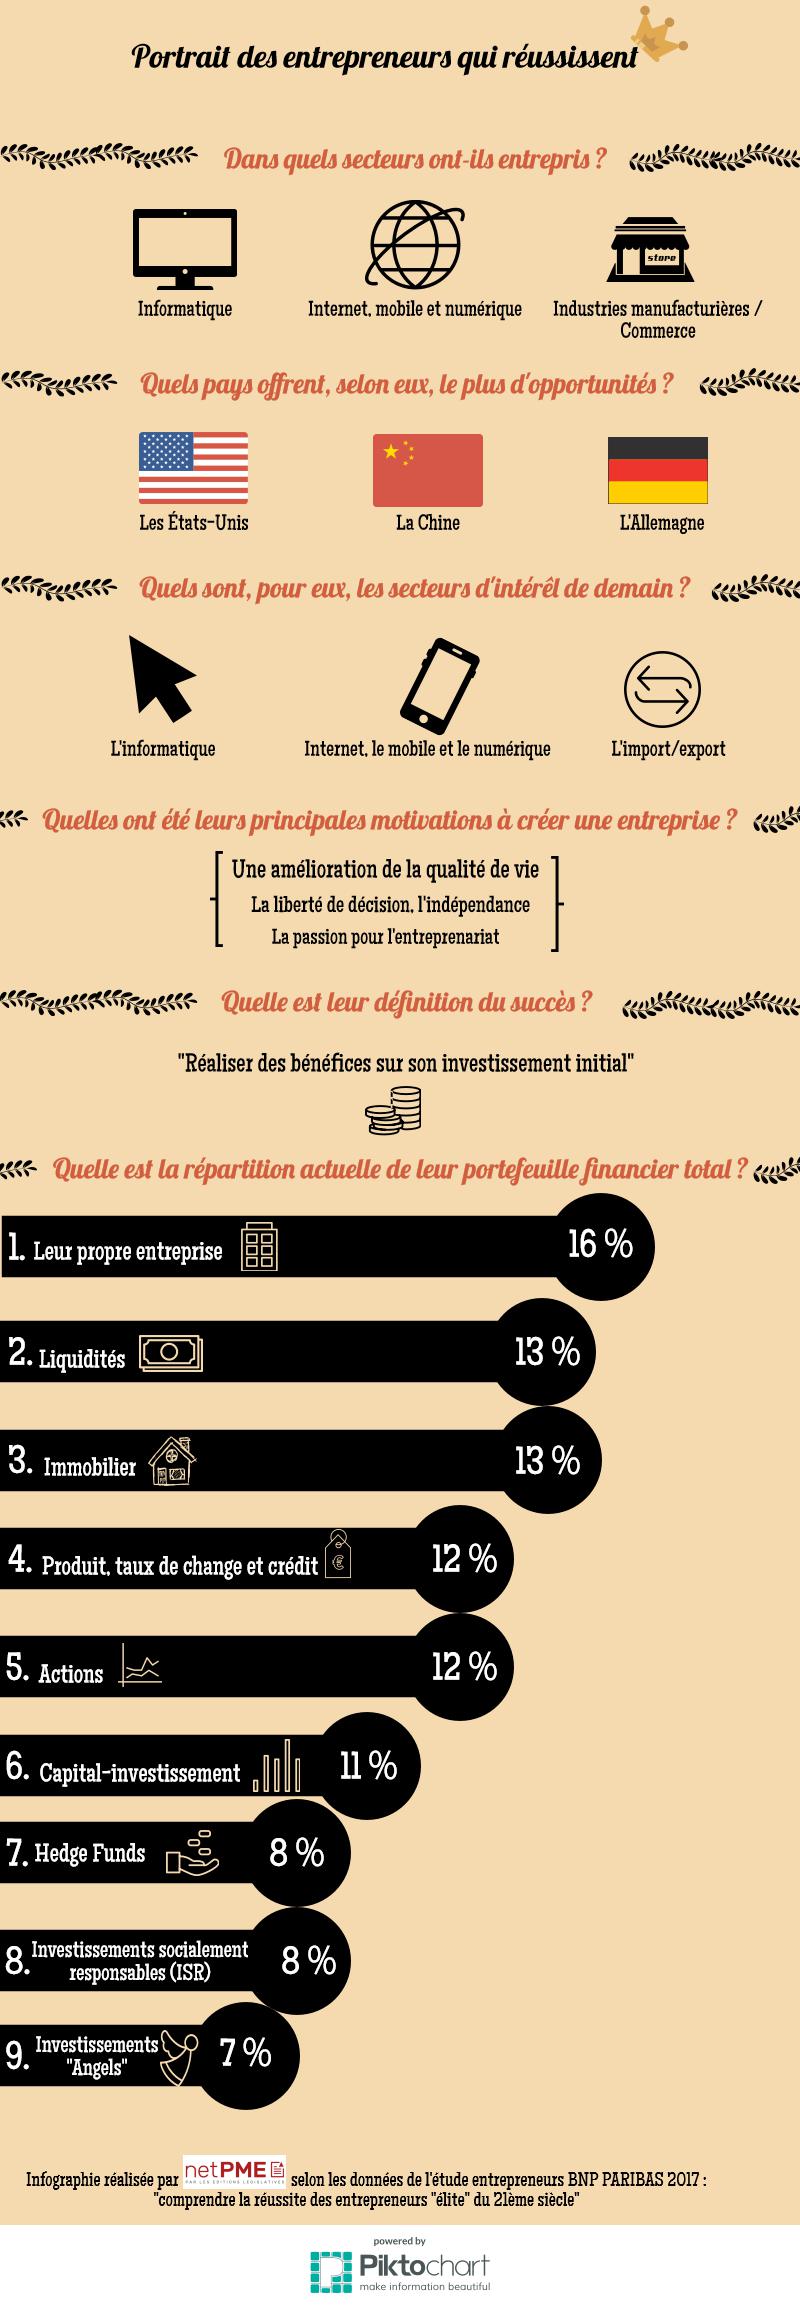 infographie-entrepreneurs-réussites-BNP-Paribas